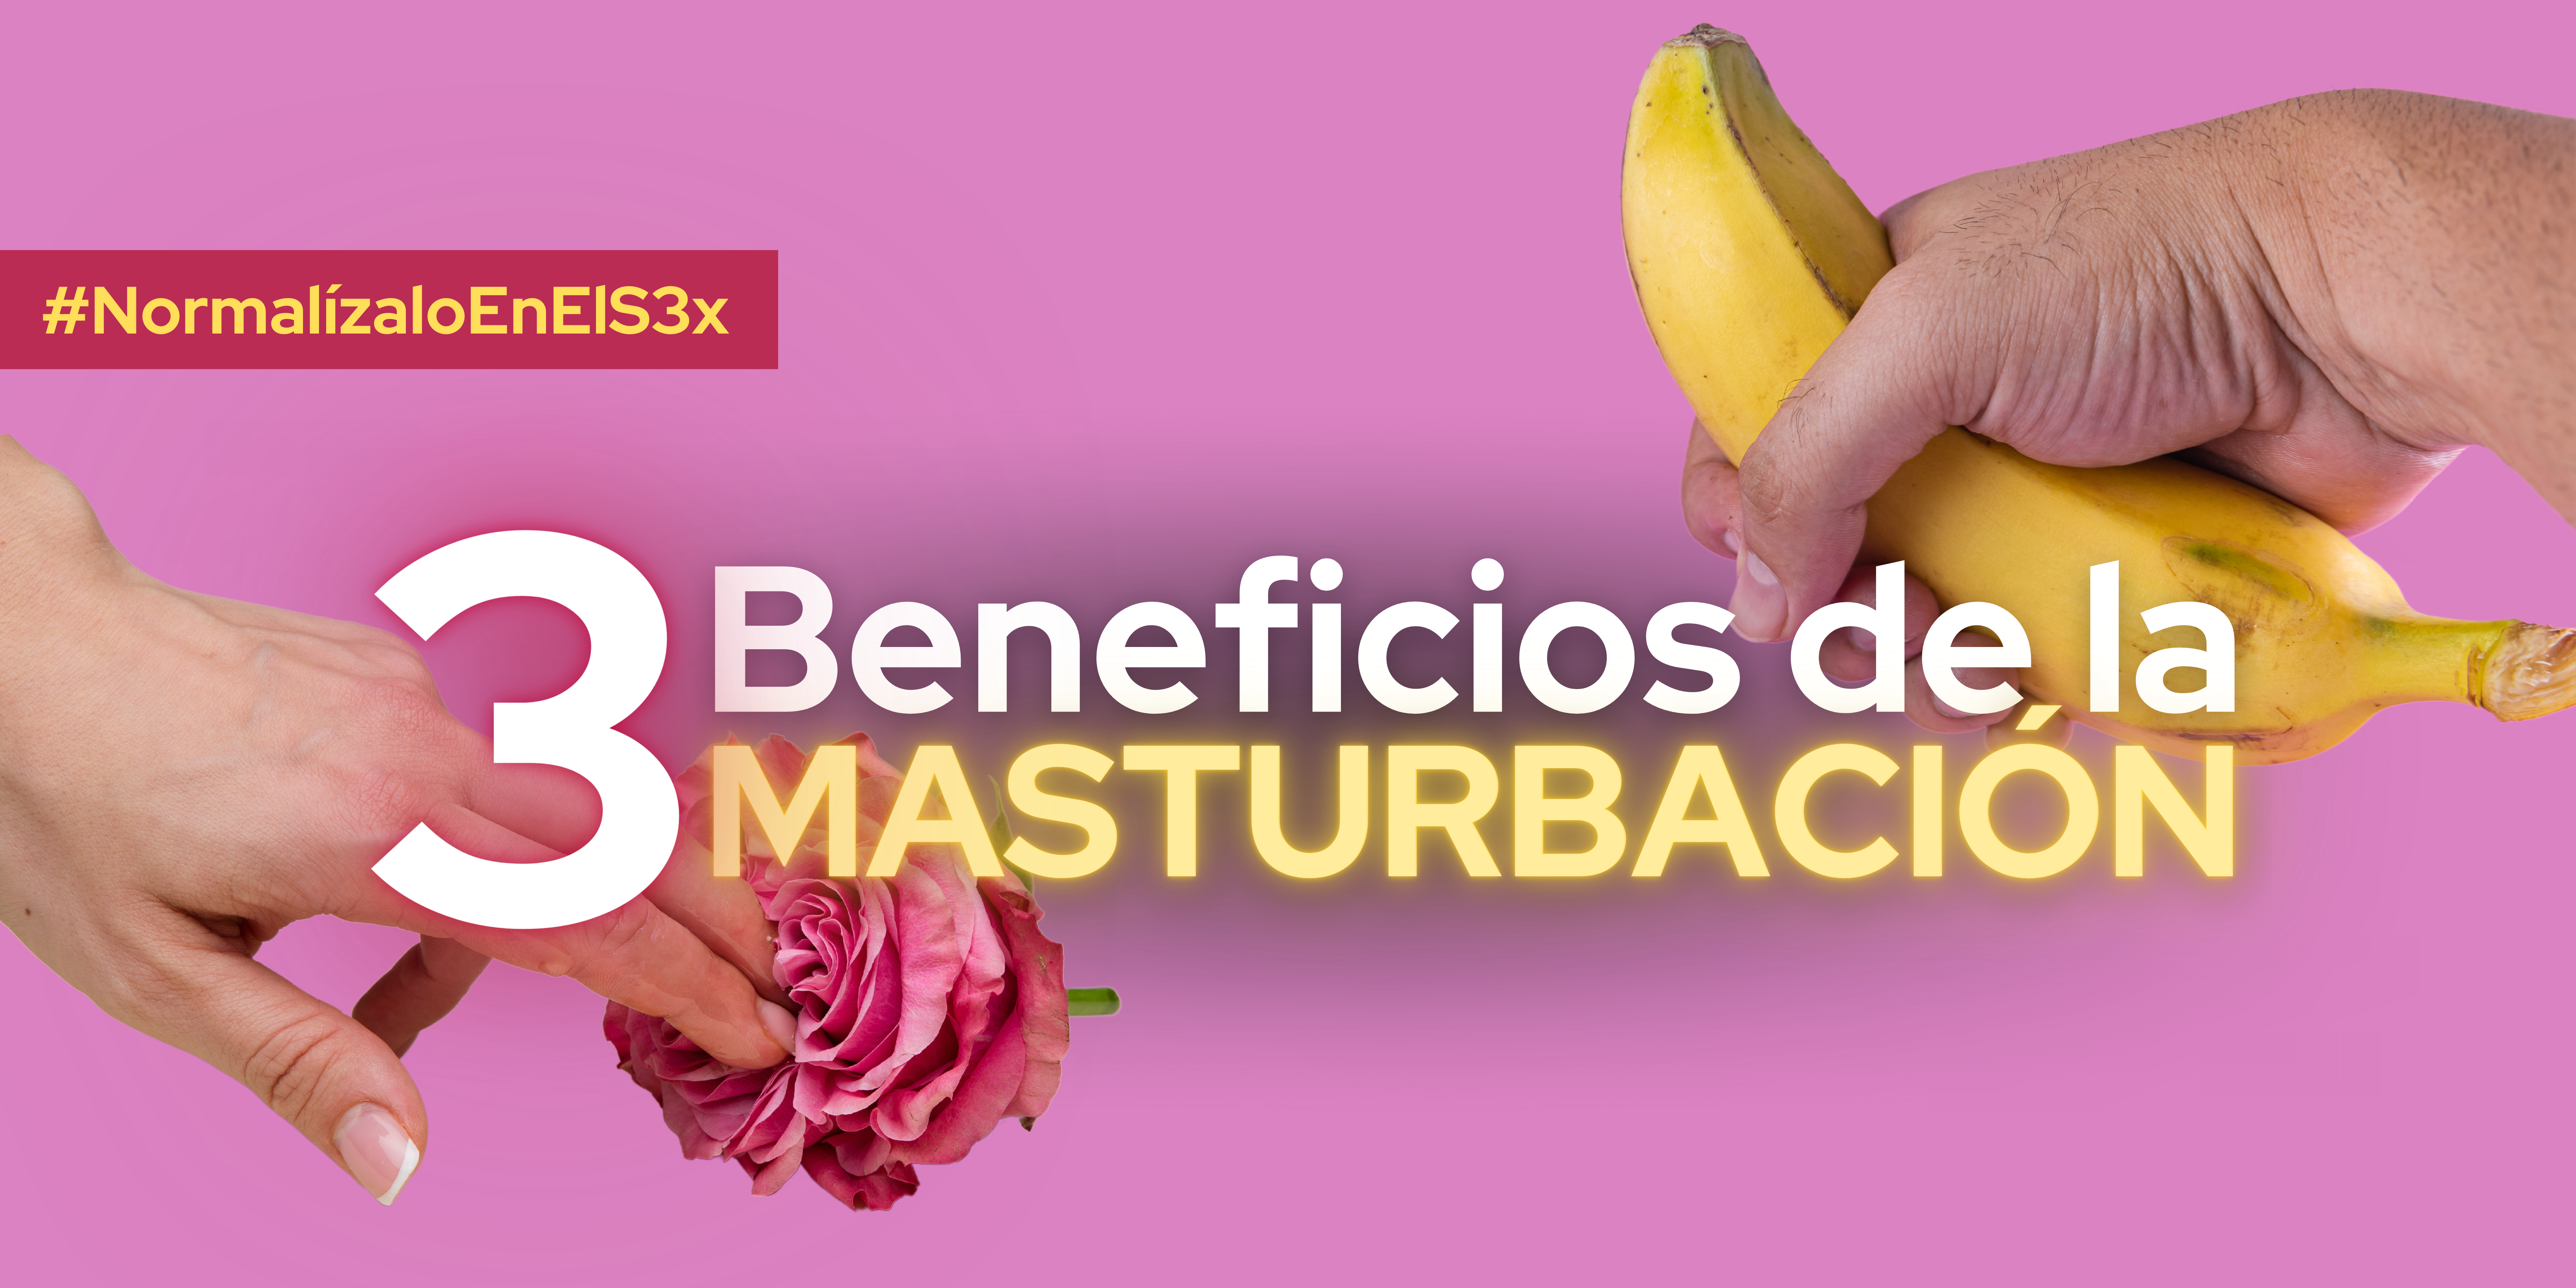 Mano cogiendo un banano y un dedo tocando una flor con texto al frente que dice “3 beneficios de la masturbación”